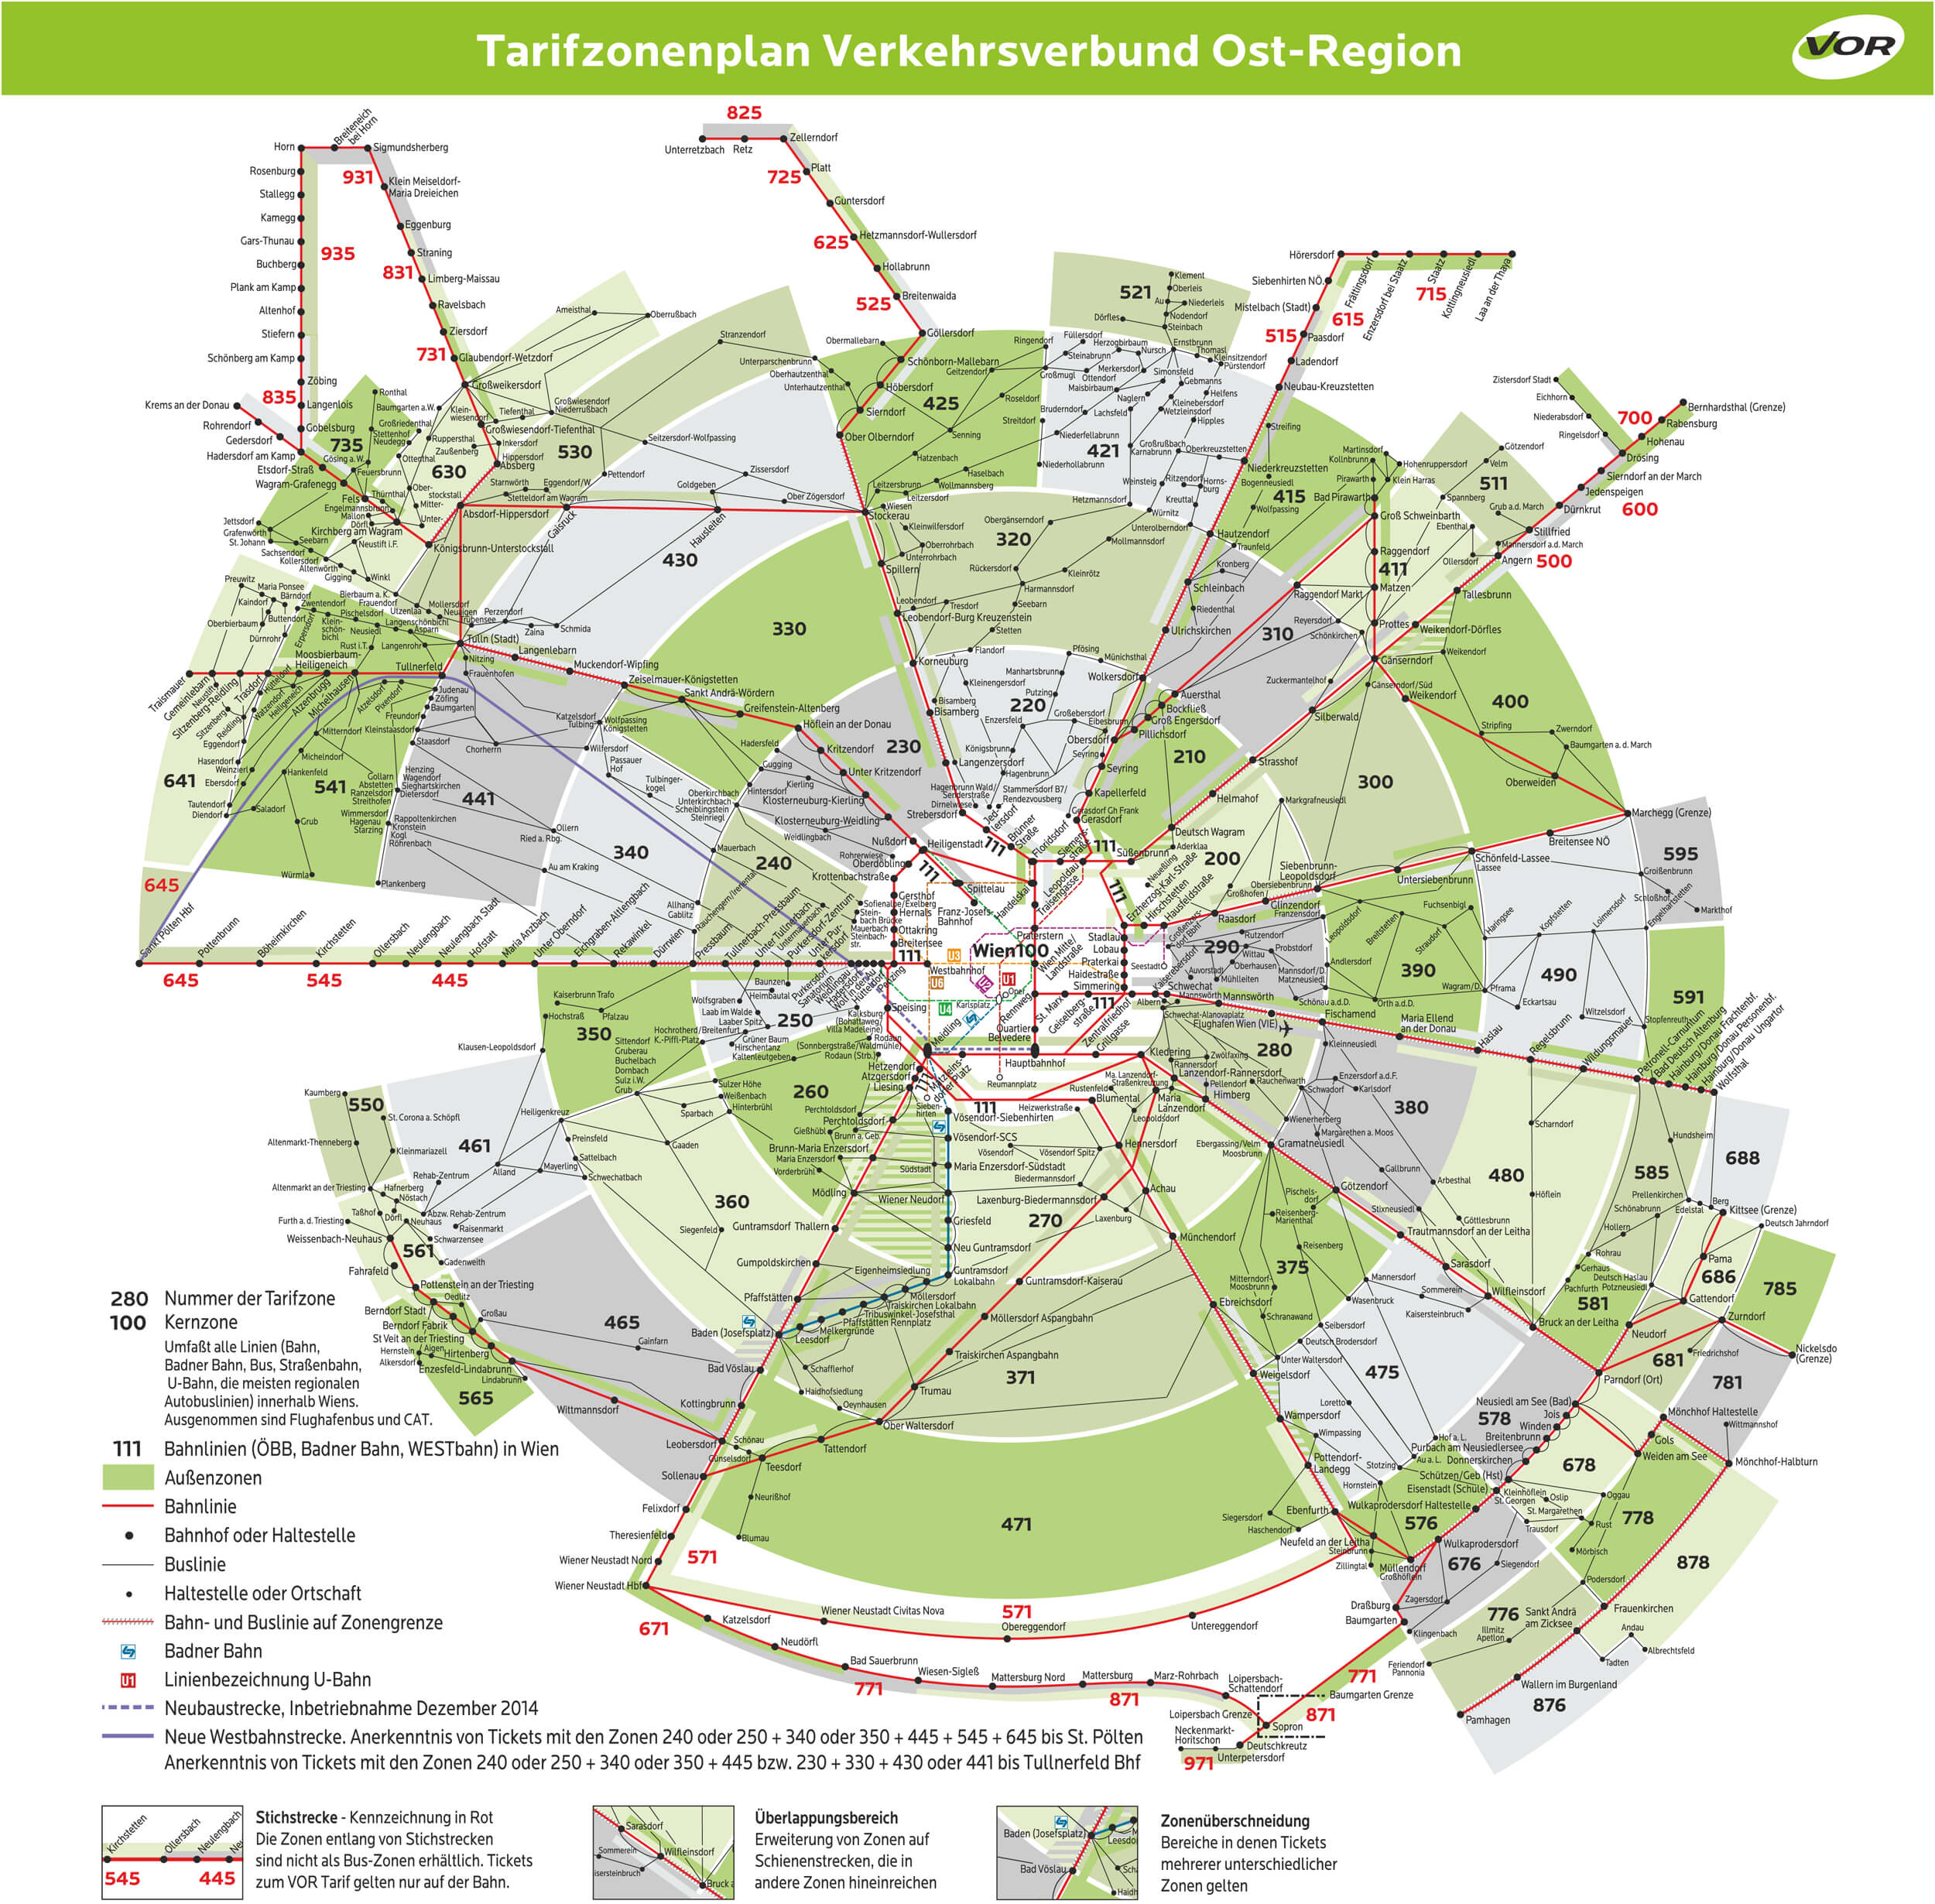 Тарифные зоны городского транспорта Вены